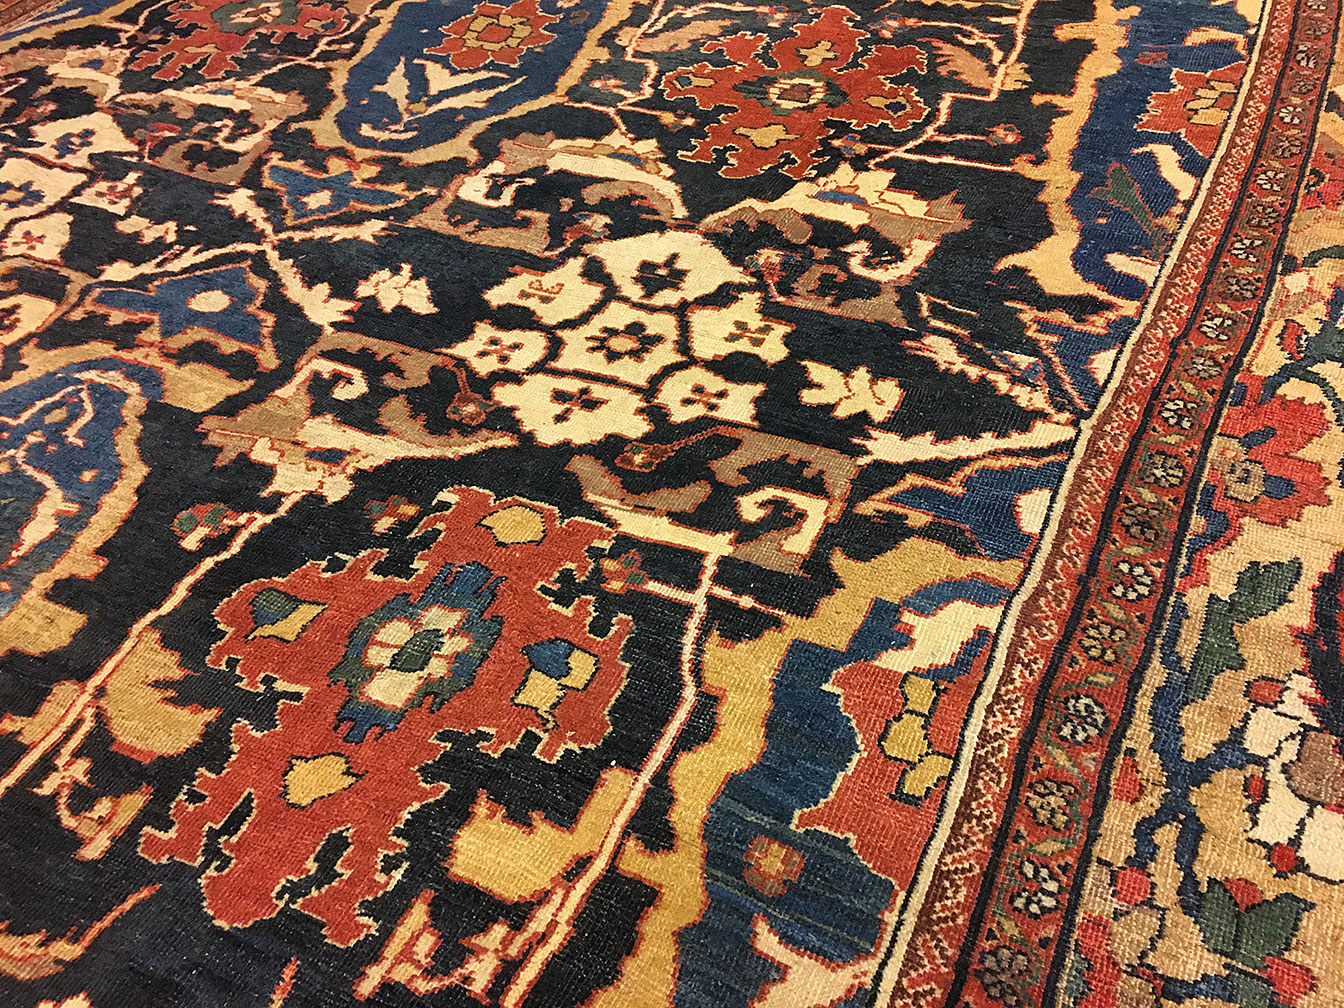 Antique sultan abad Carpet - # 52119